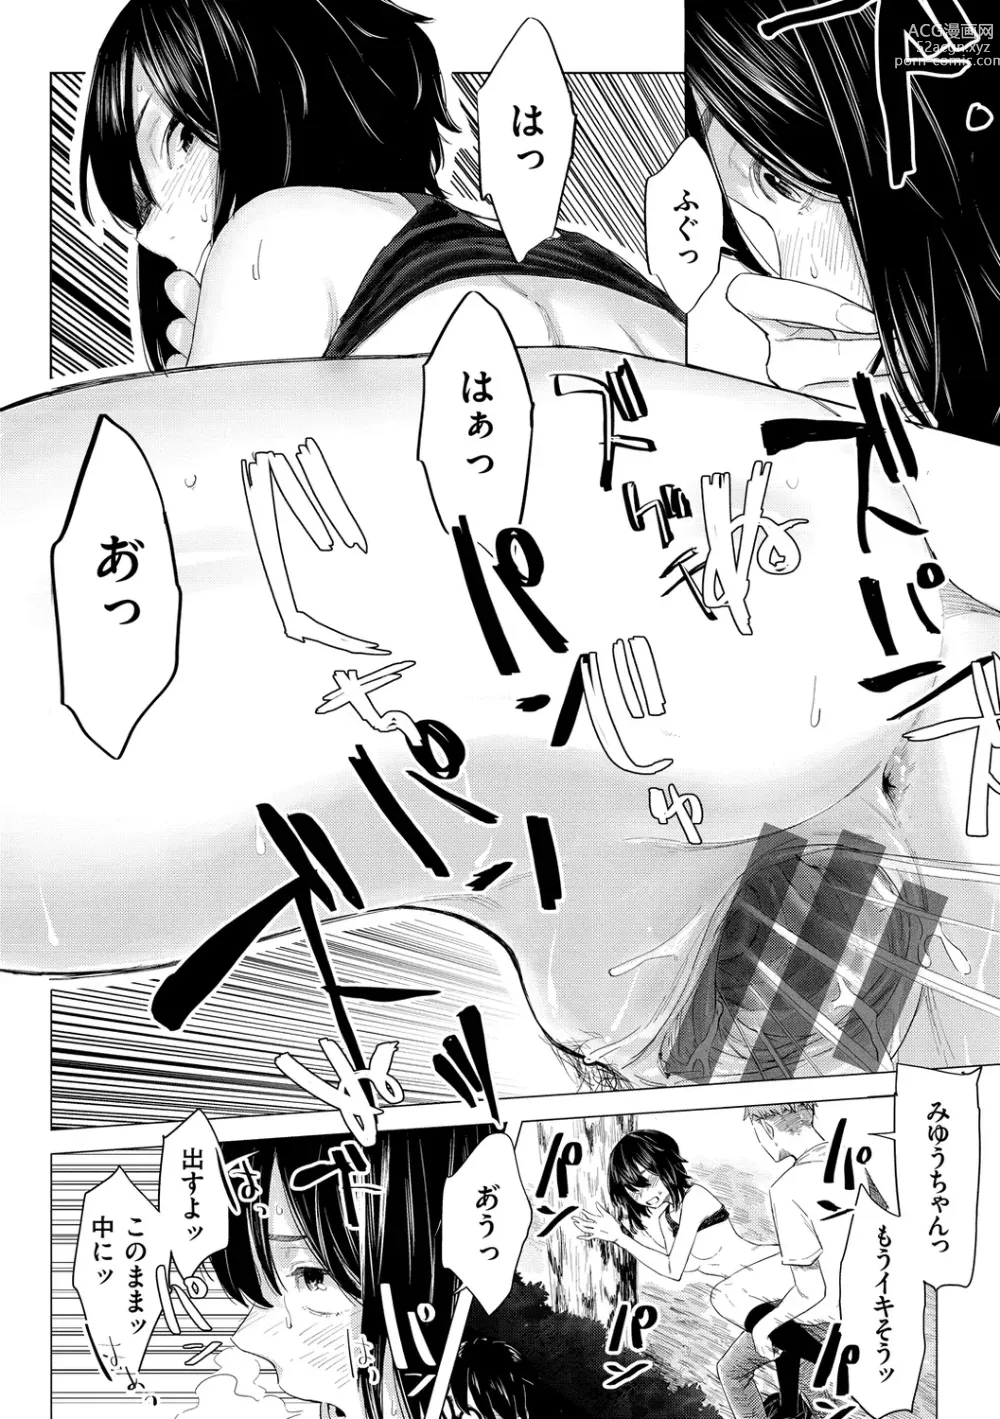 Page 158 of manga Yabai Onna